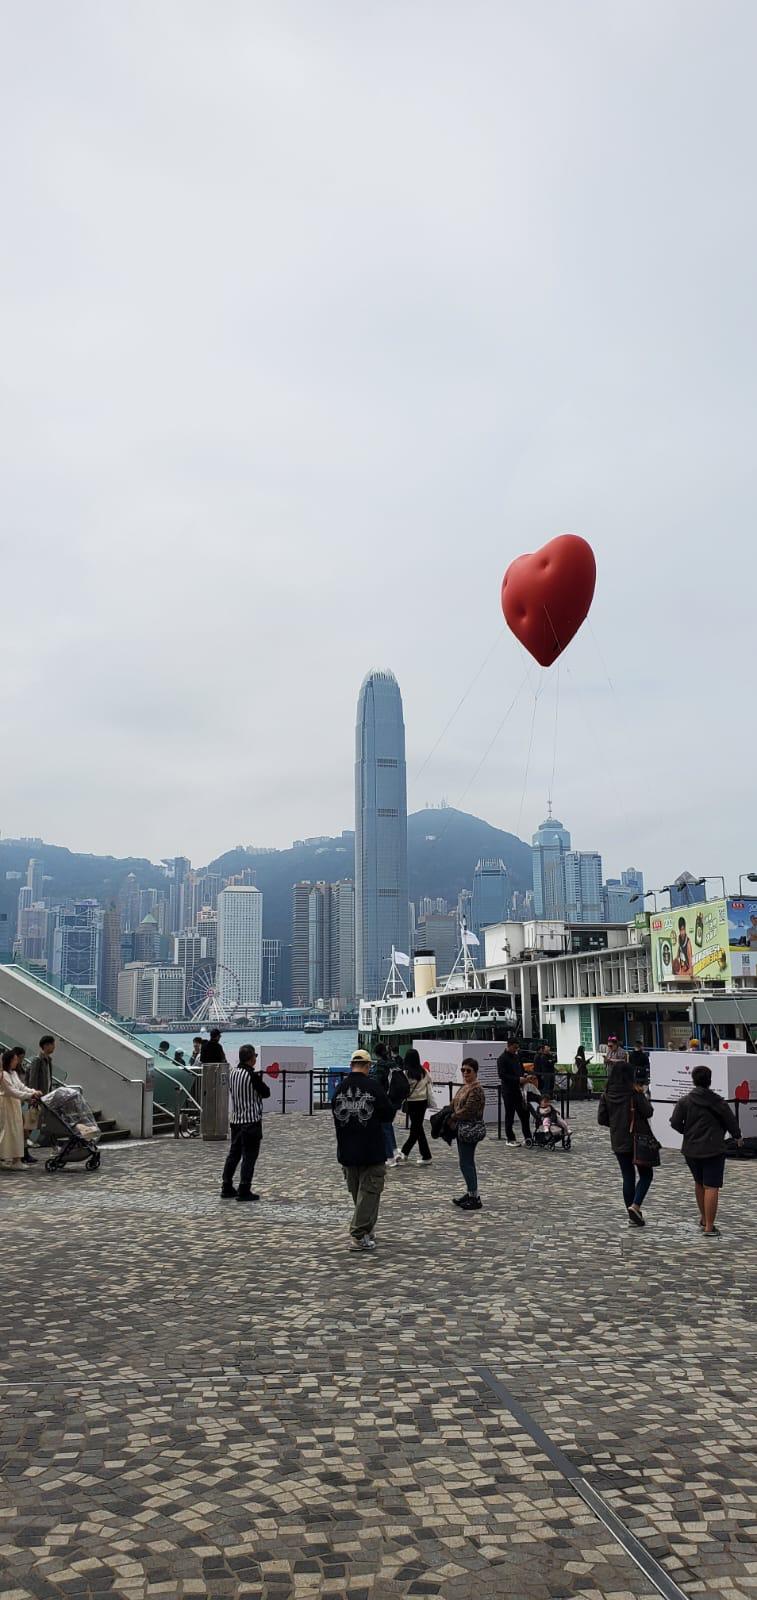 Chubby Hearts 活動共吸引超過70萬名市民及遊客觀賞。香港設計中心fb